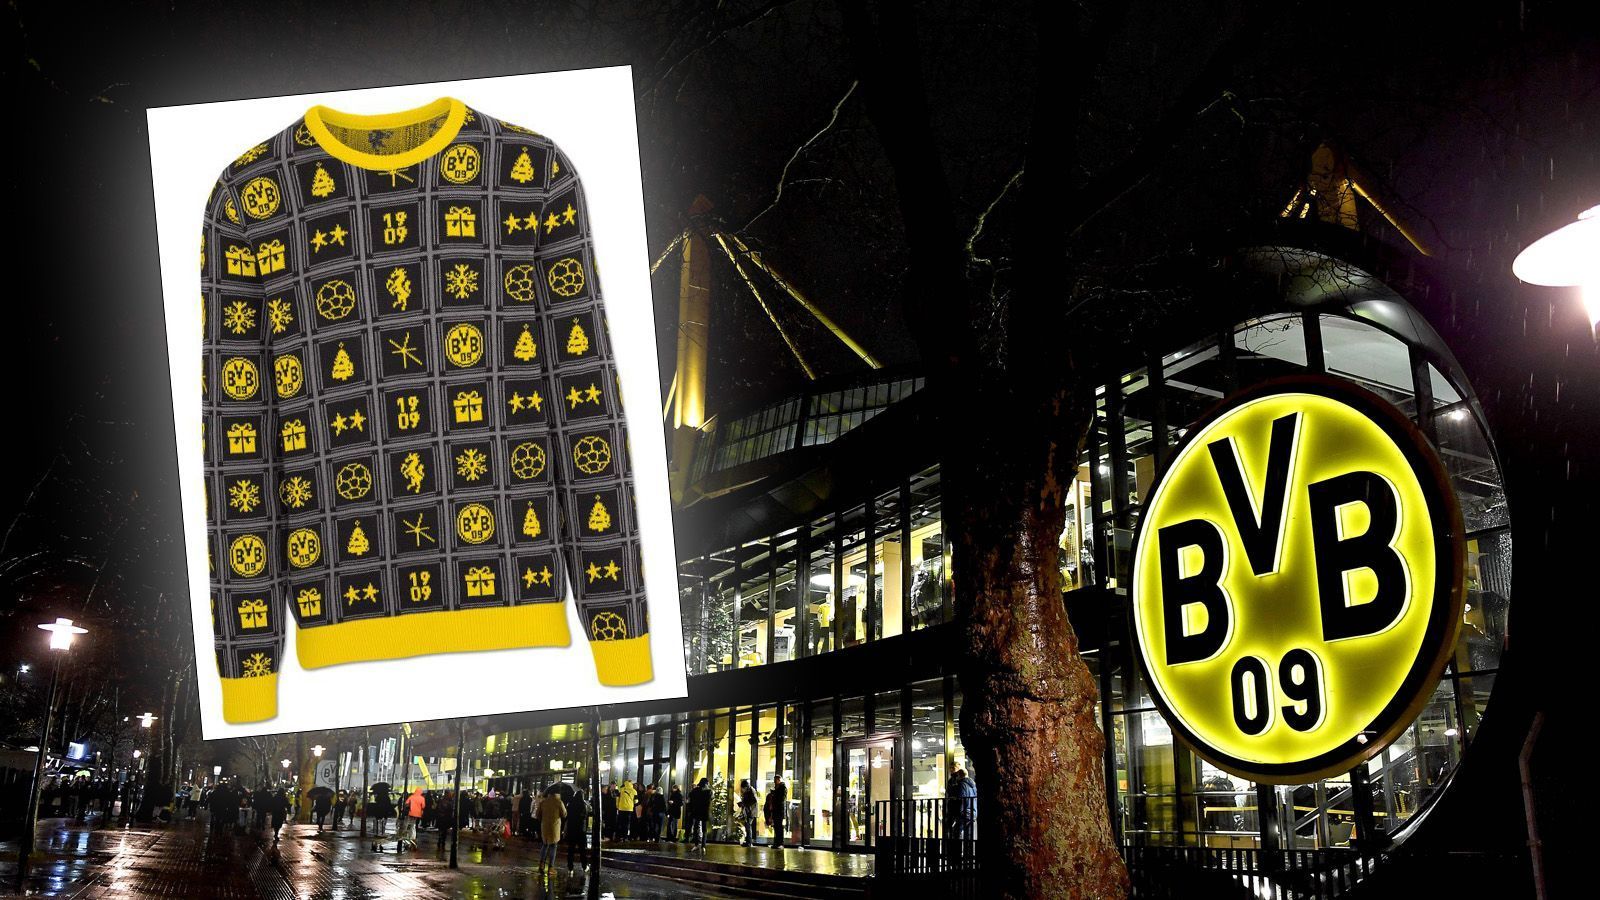 
                <strong>Borussia Dortmund</strong><br>
                Der Revier-Rivale aus Dortmund macht in diesem Jahr mit seinem Sweater auf Adventskalender. Allerdings kann man schon jedes Türchen im Vorfeld sehen. Da wurde das Konzept wohl nicht so ganz verstanden.
              